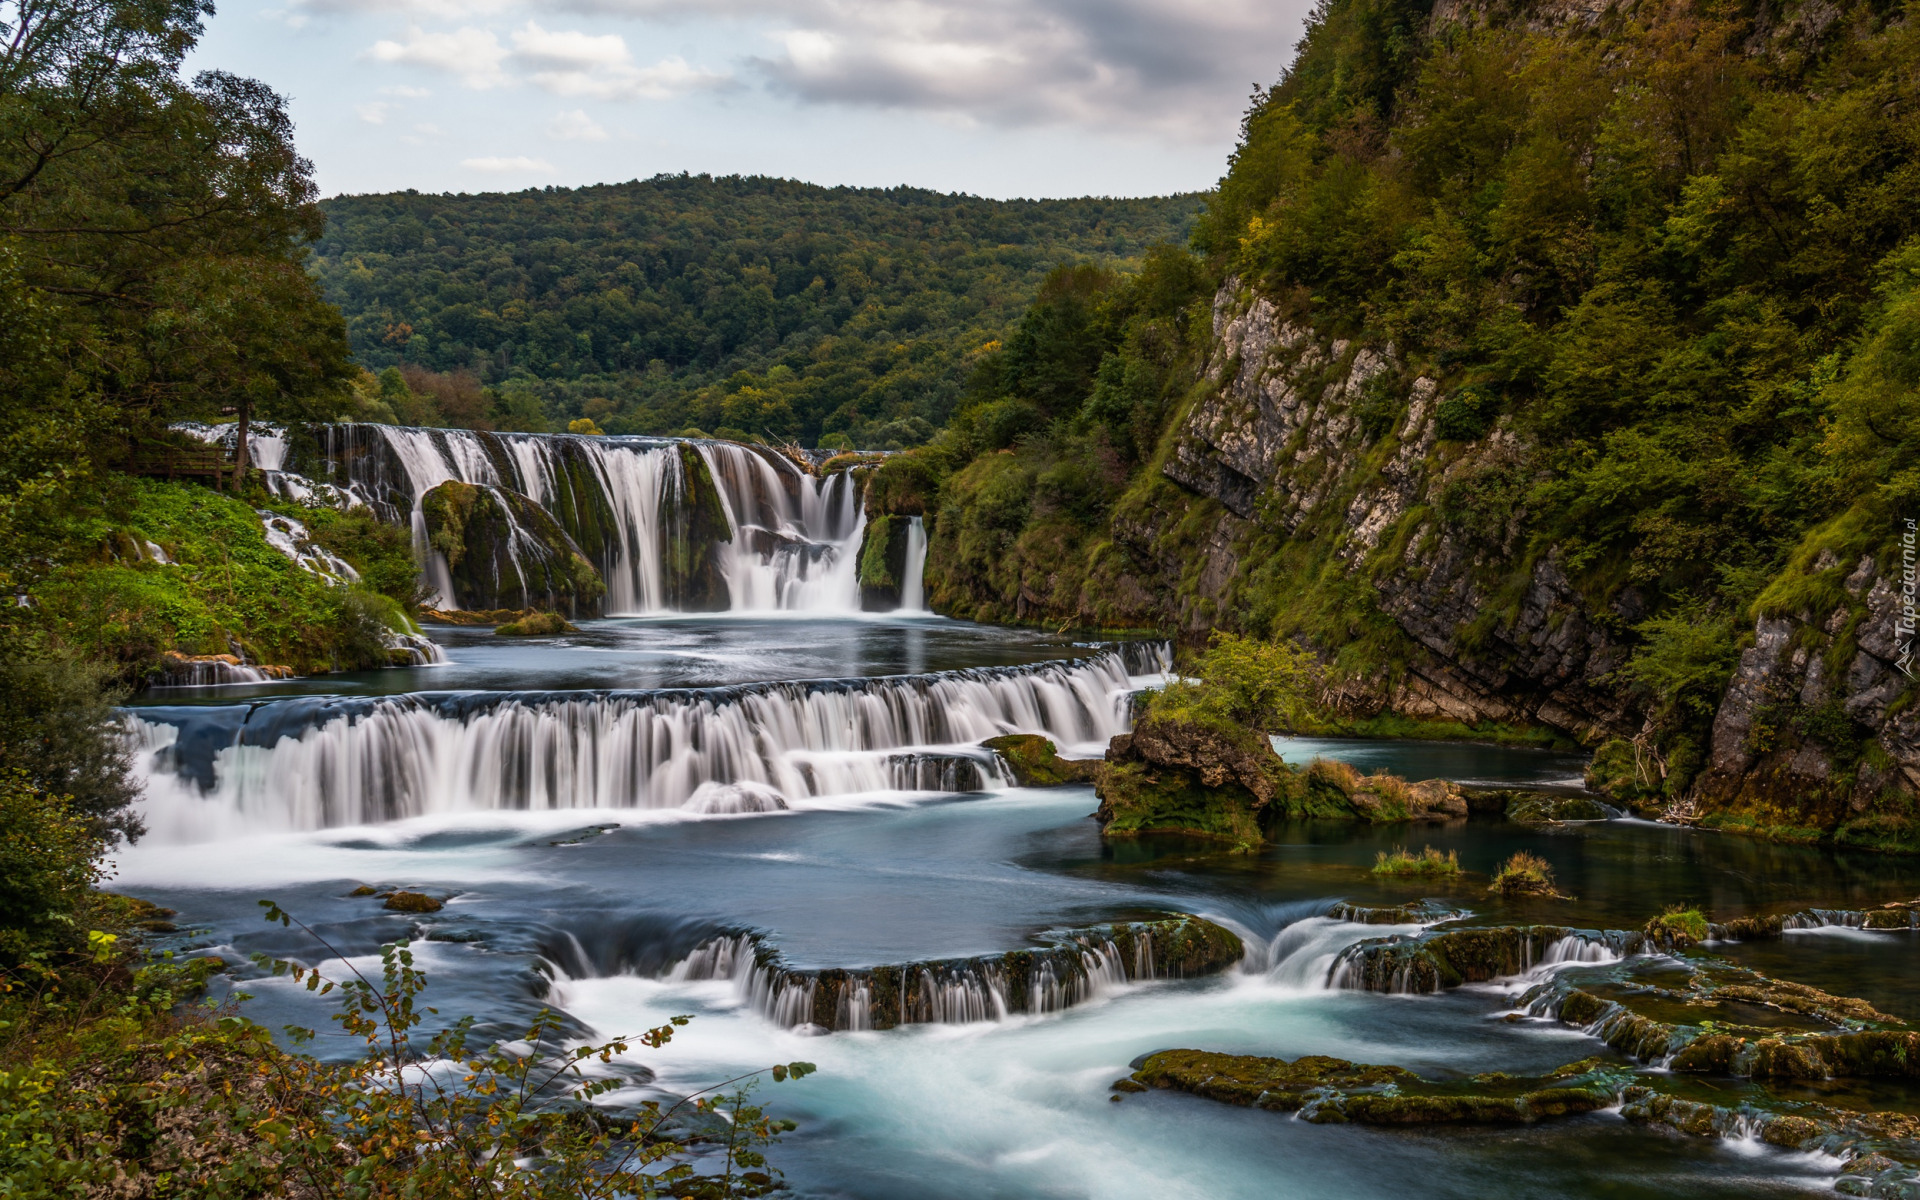 Las, Skała, Rzeka Una, Wodospady, Strbacki Buk, Kaskada, Kamienie, Bośnia i Hercegowina